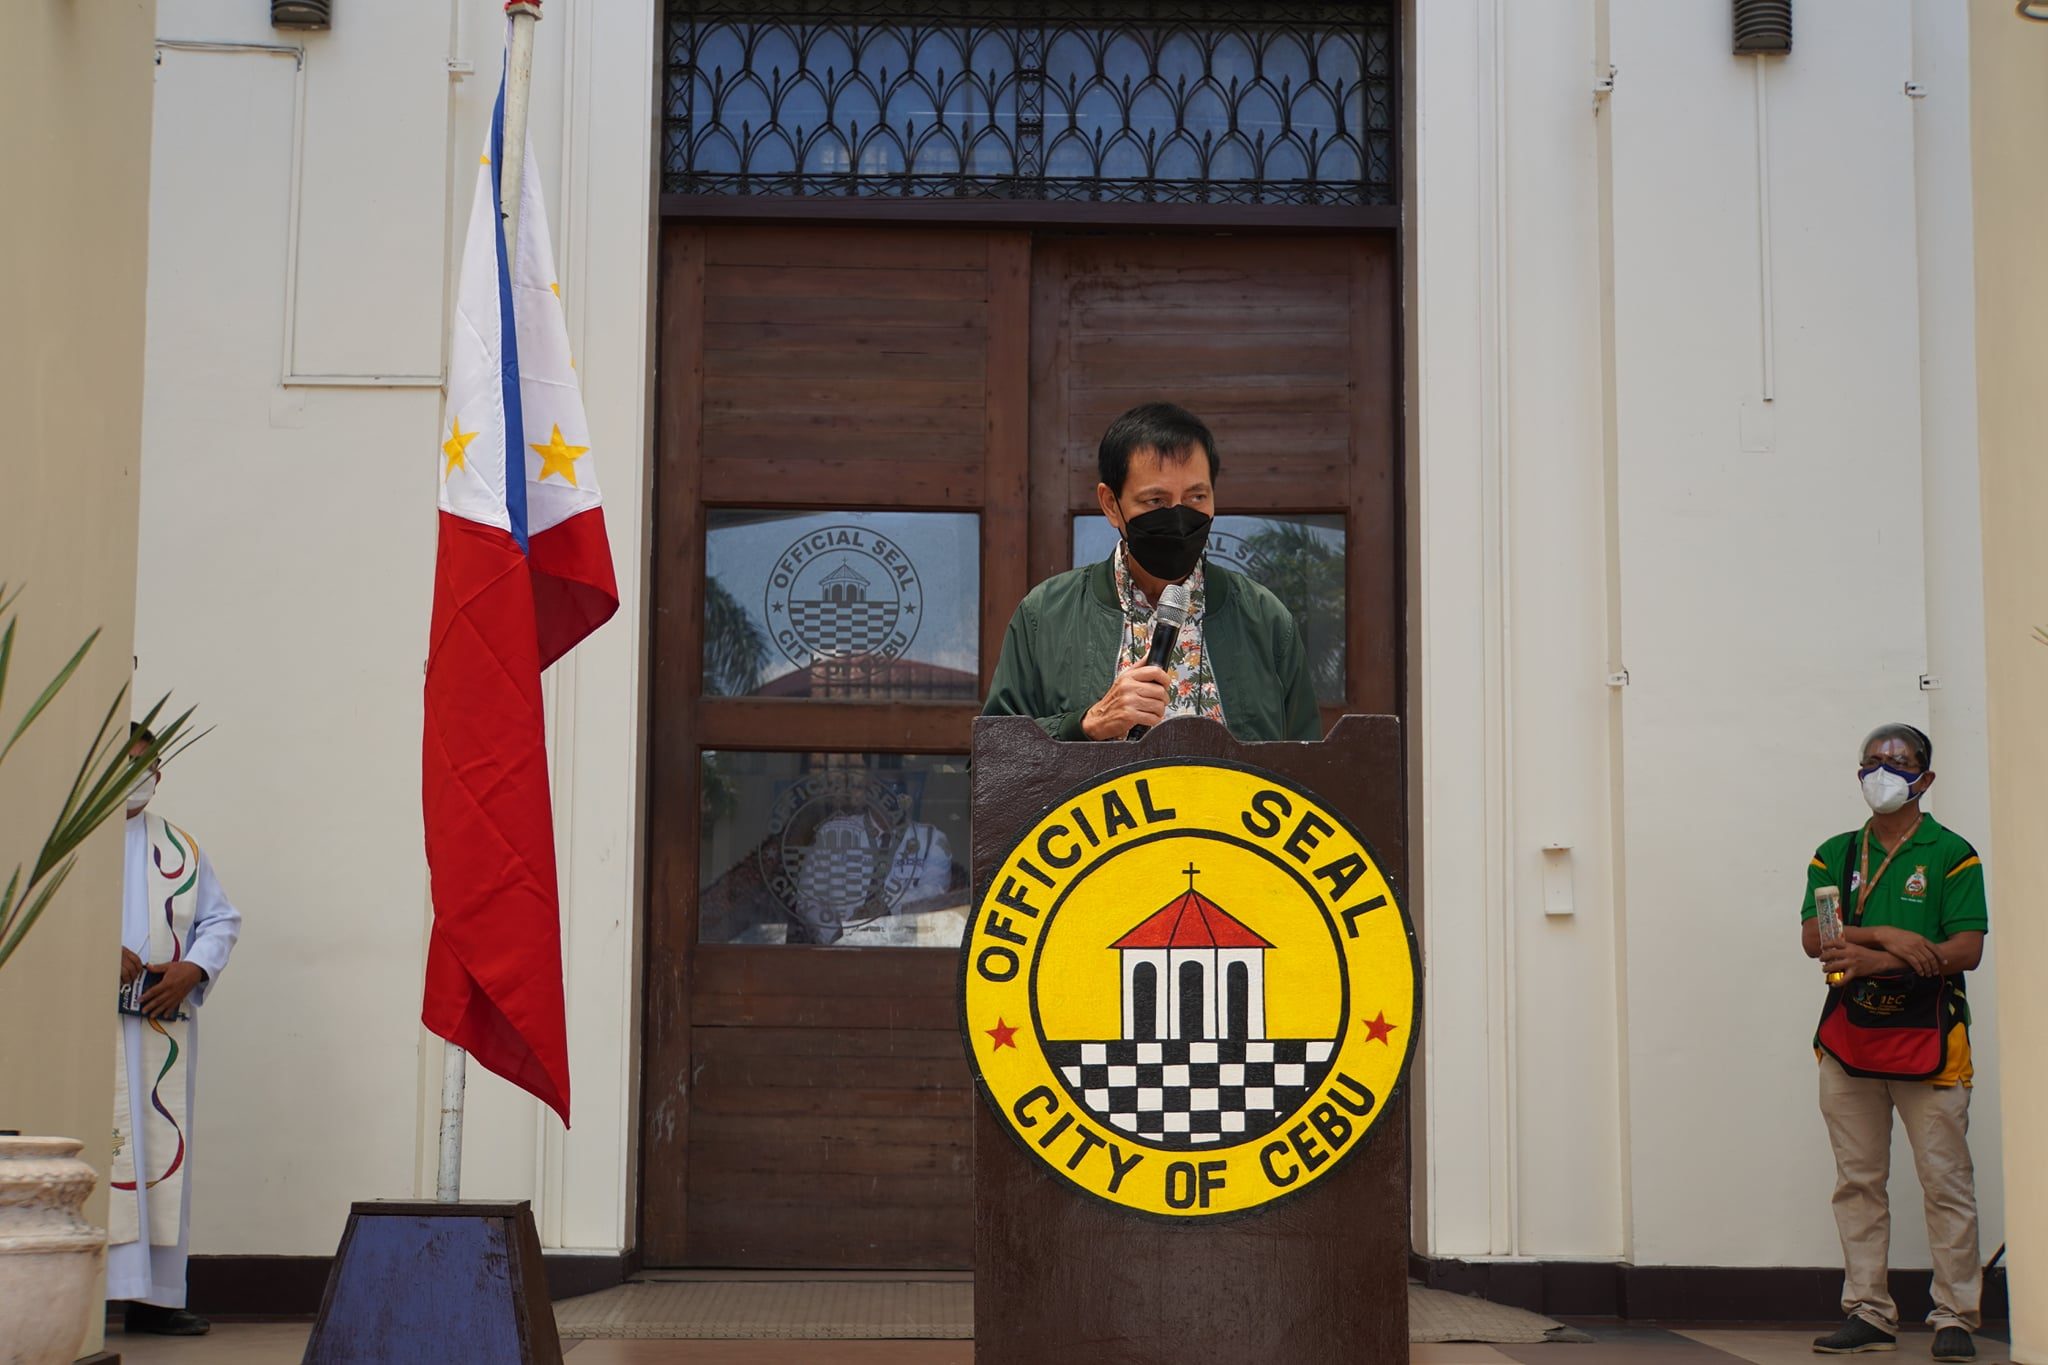 Mike Rama to run for mayor of Cebu City in 2022